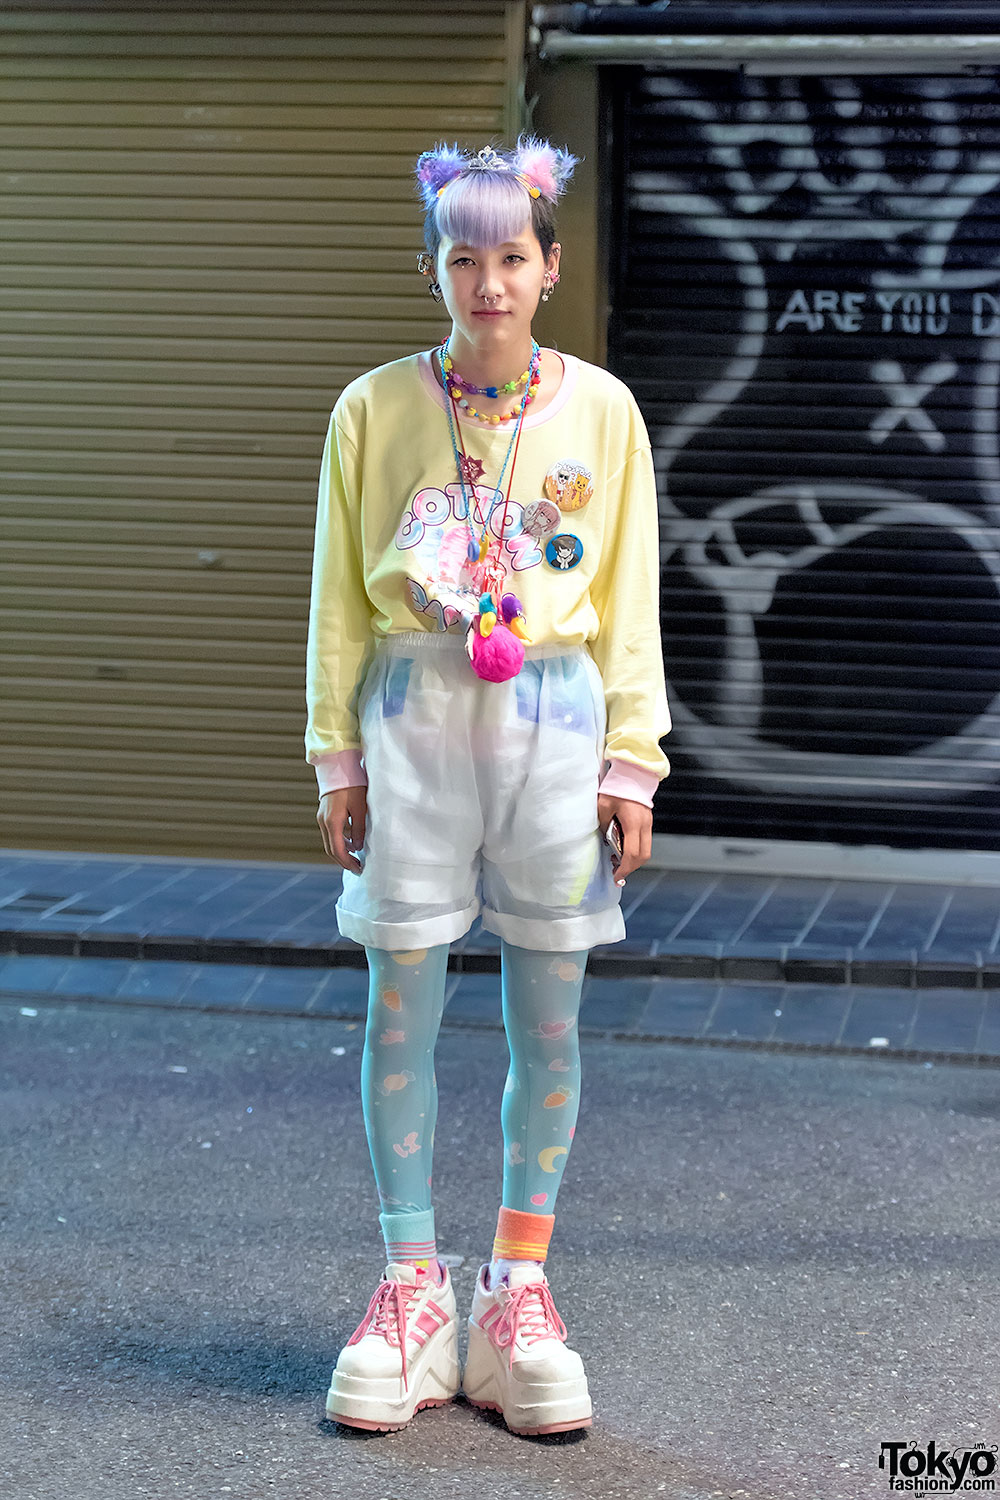 Harajuku Guy in Milklim “Cotton Candy” Top, Tiara, Sheer Shorts & Spank!